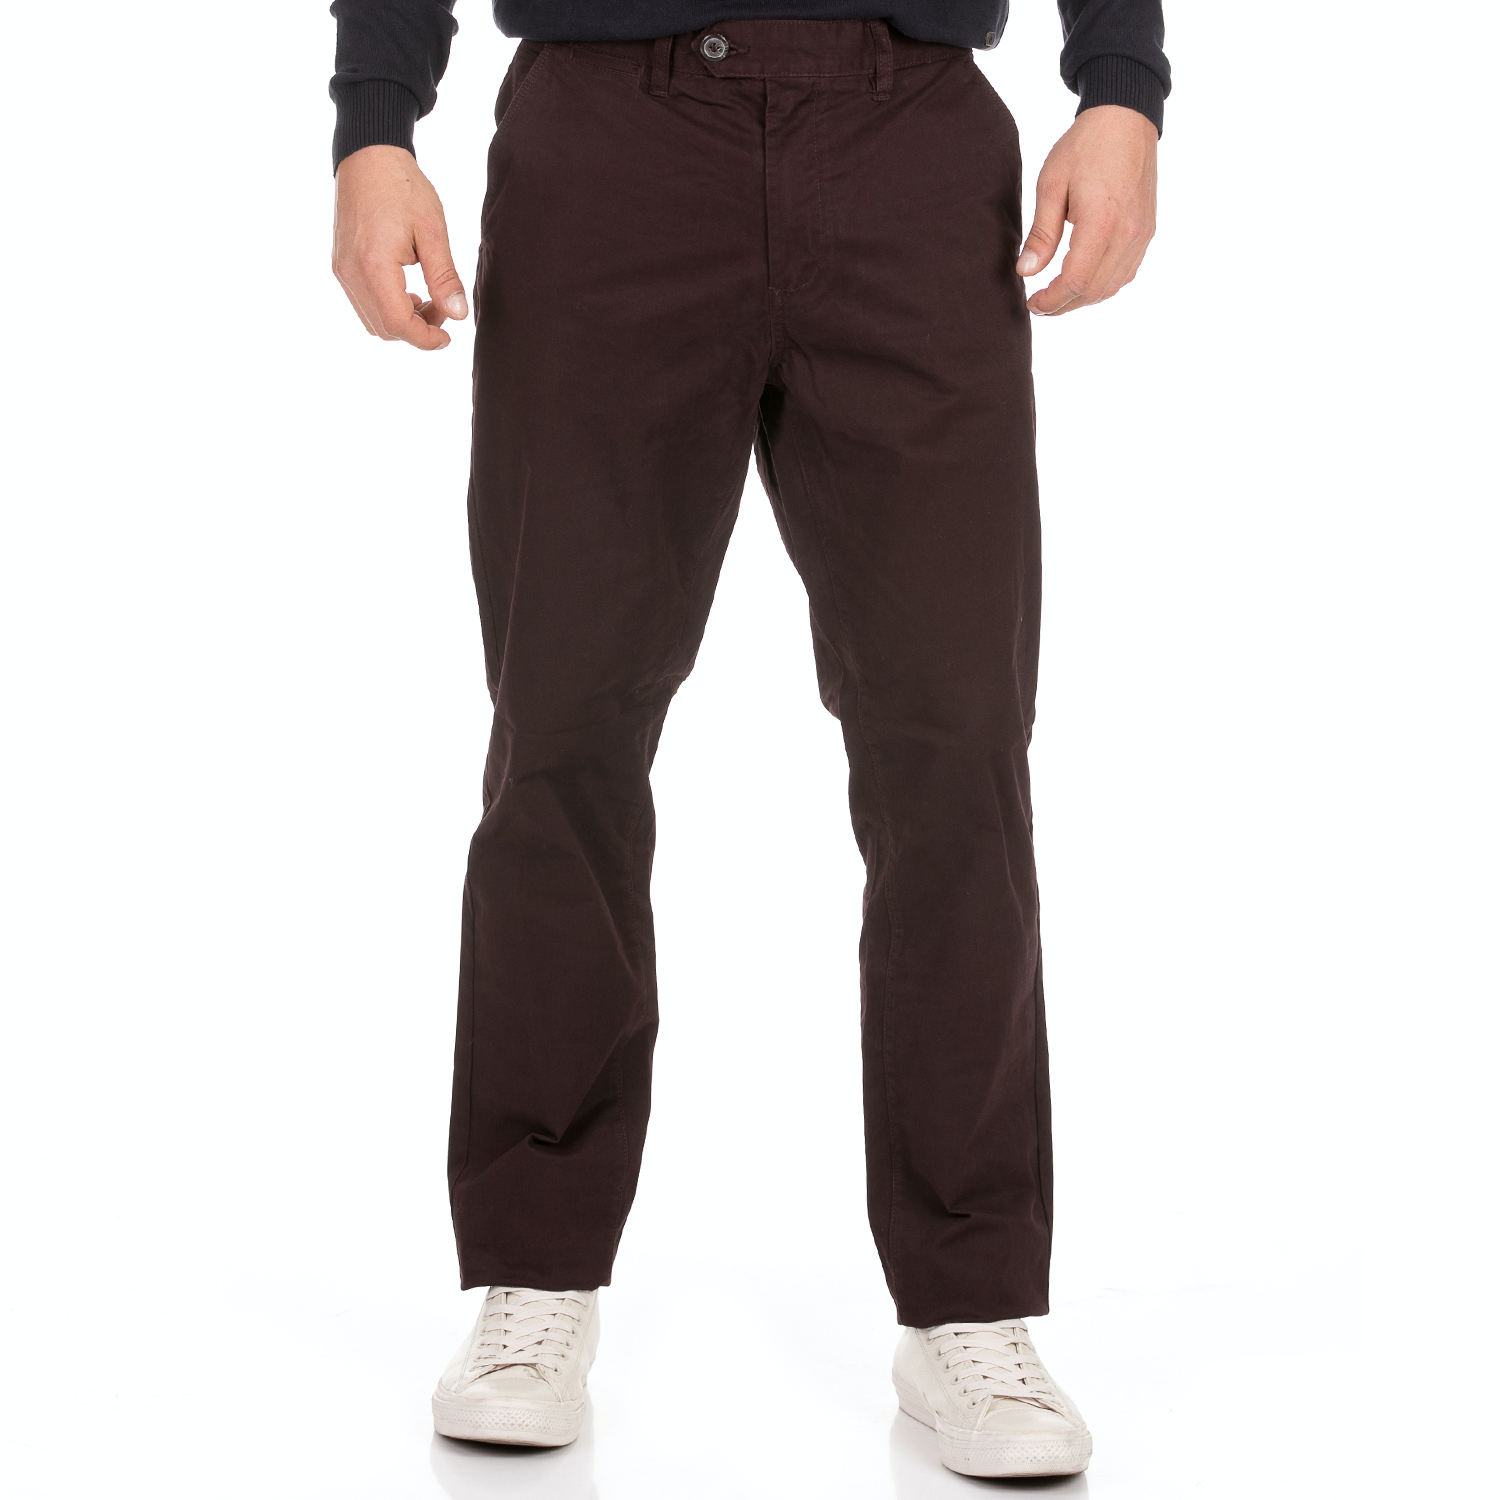 Ανδρικά/Ρούχα/Παντελόνια/Chinos BATTERY - Ανδρικό παντελόνι chino BATTERY καφέ